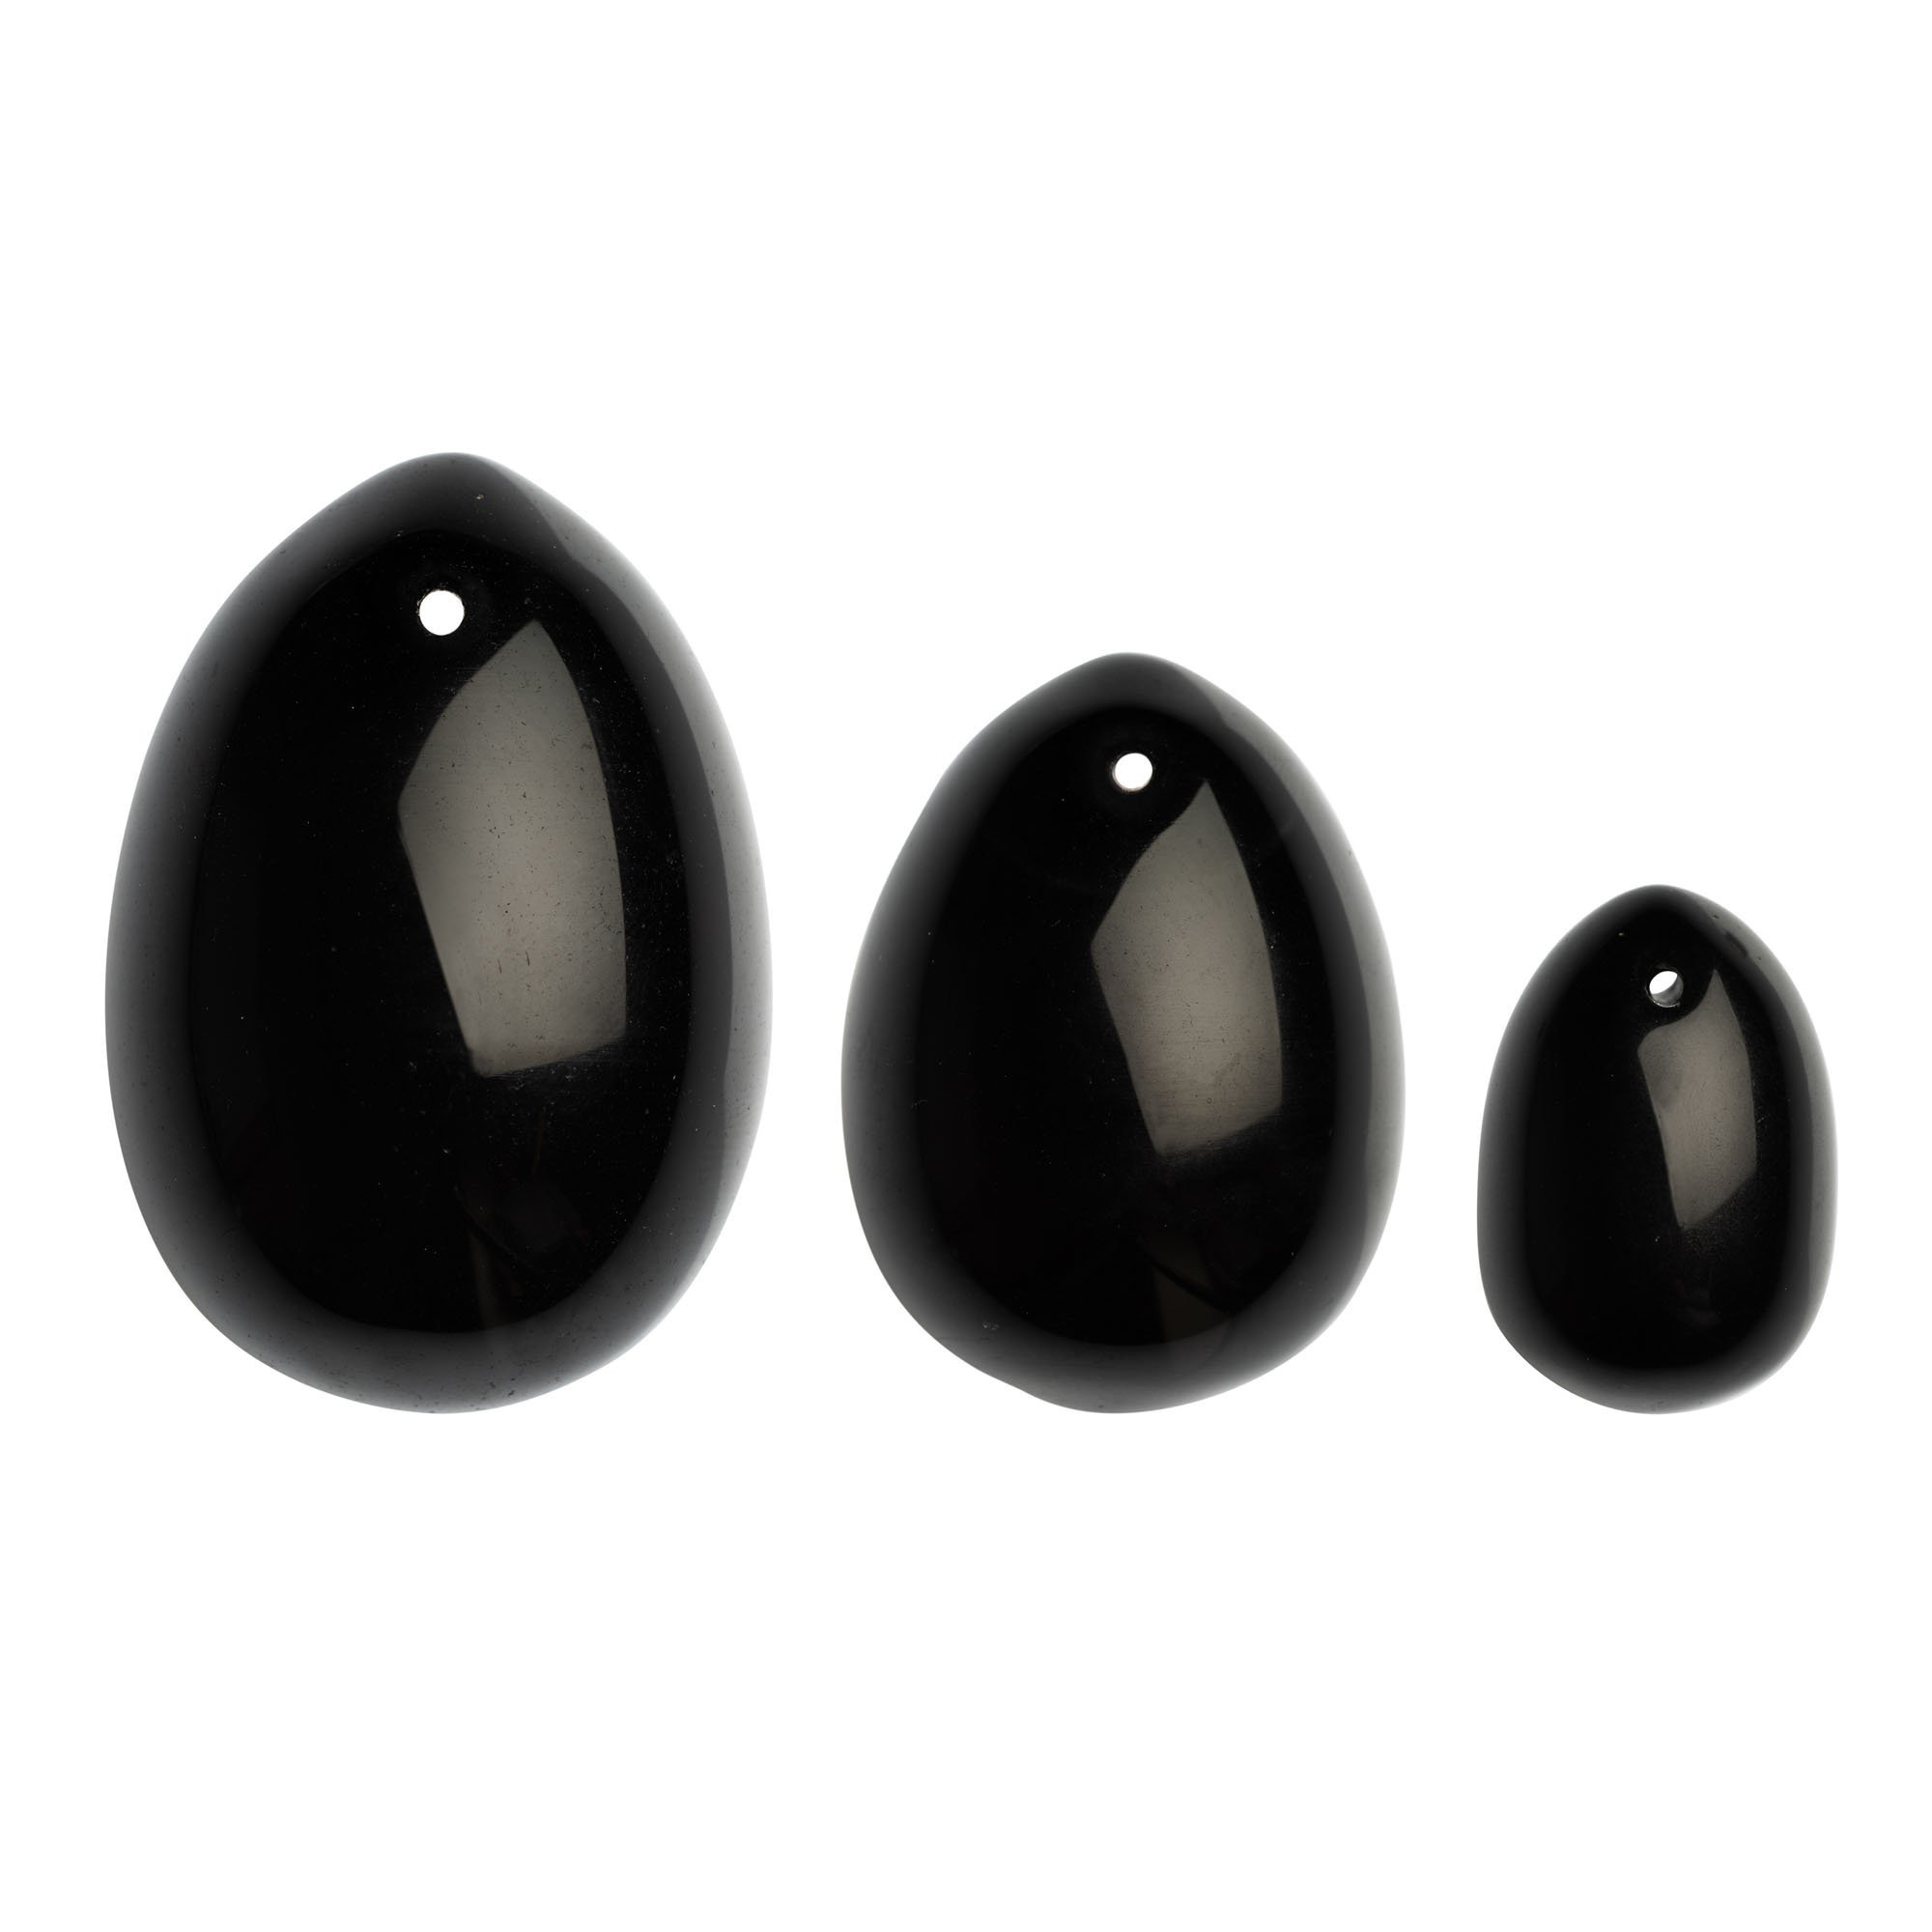 Vaginalinių kiaušinėlių rinkinys „Black Obsidian Yoni Eggs“ - La Gemmes